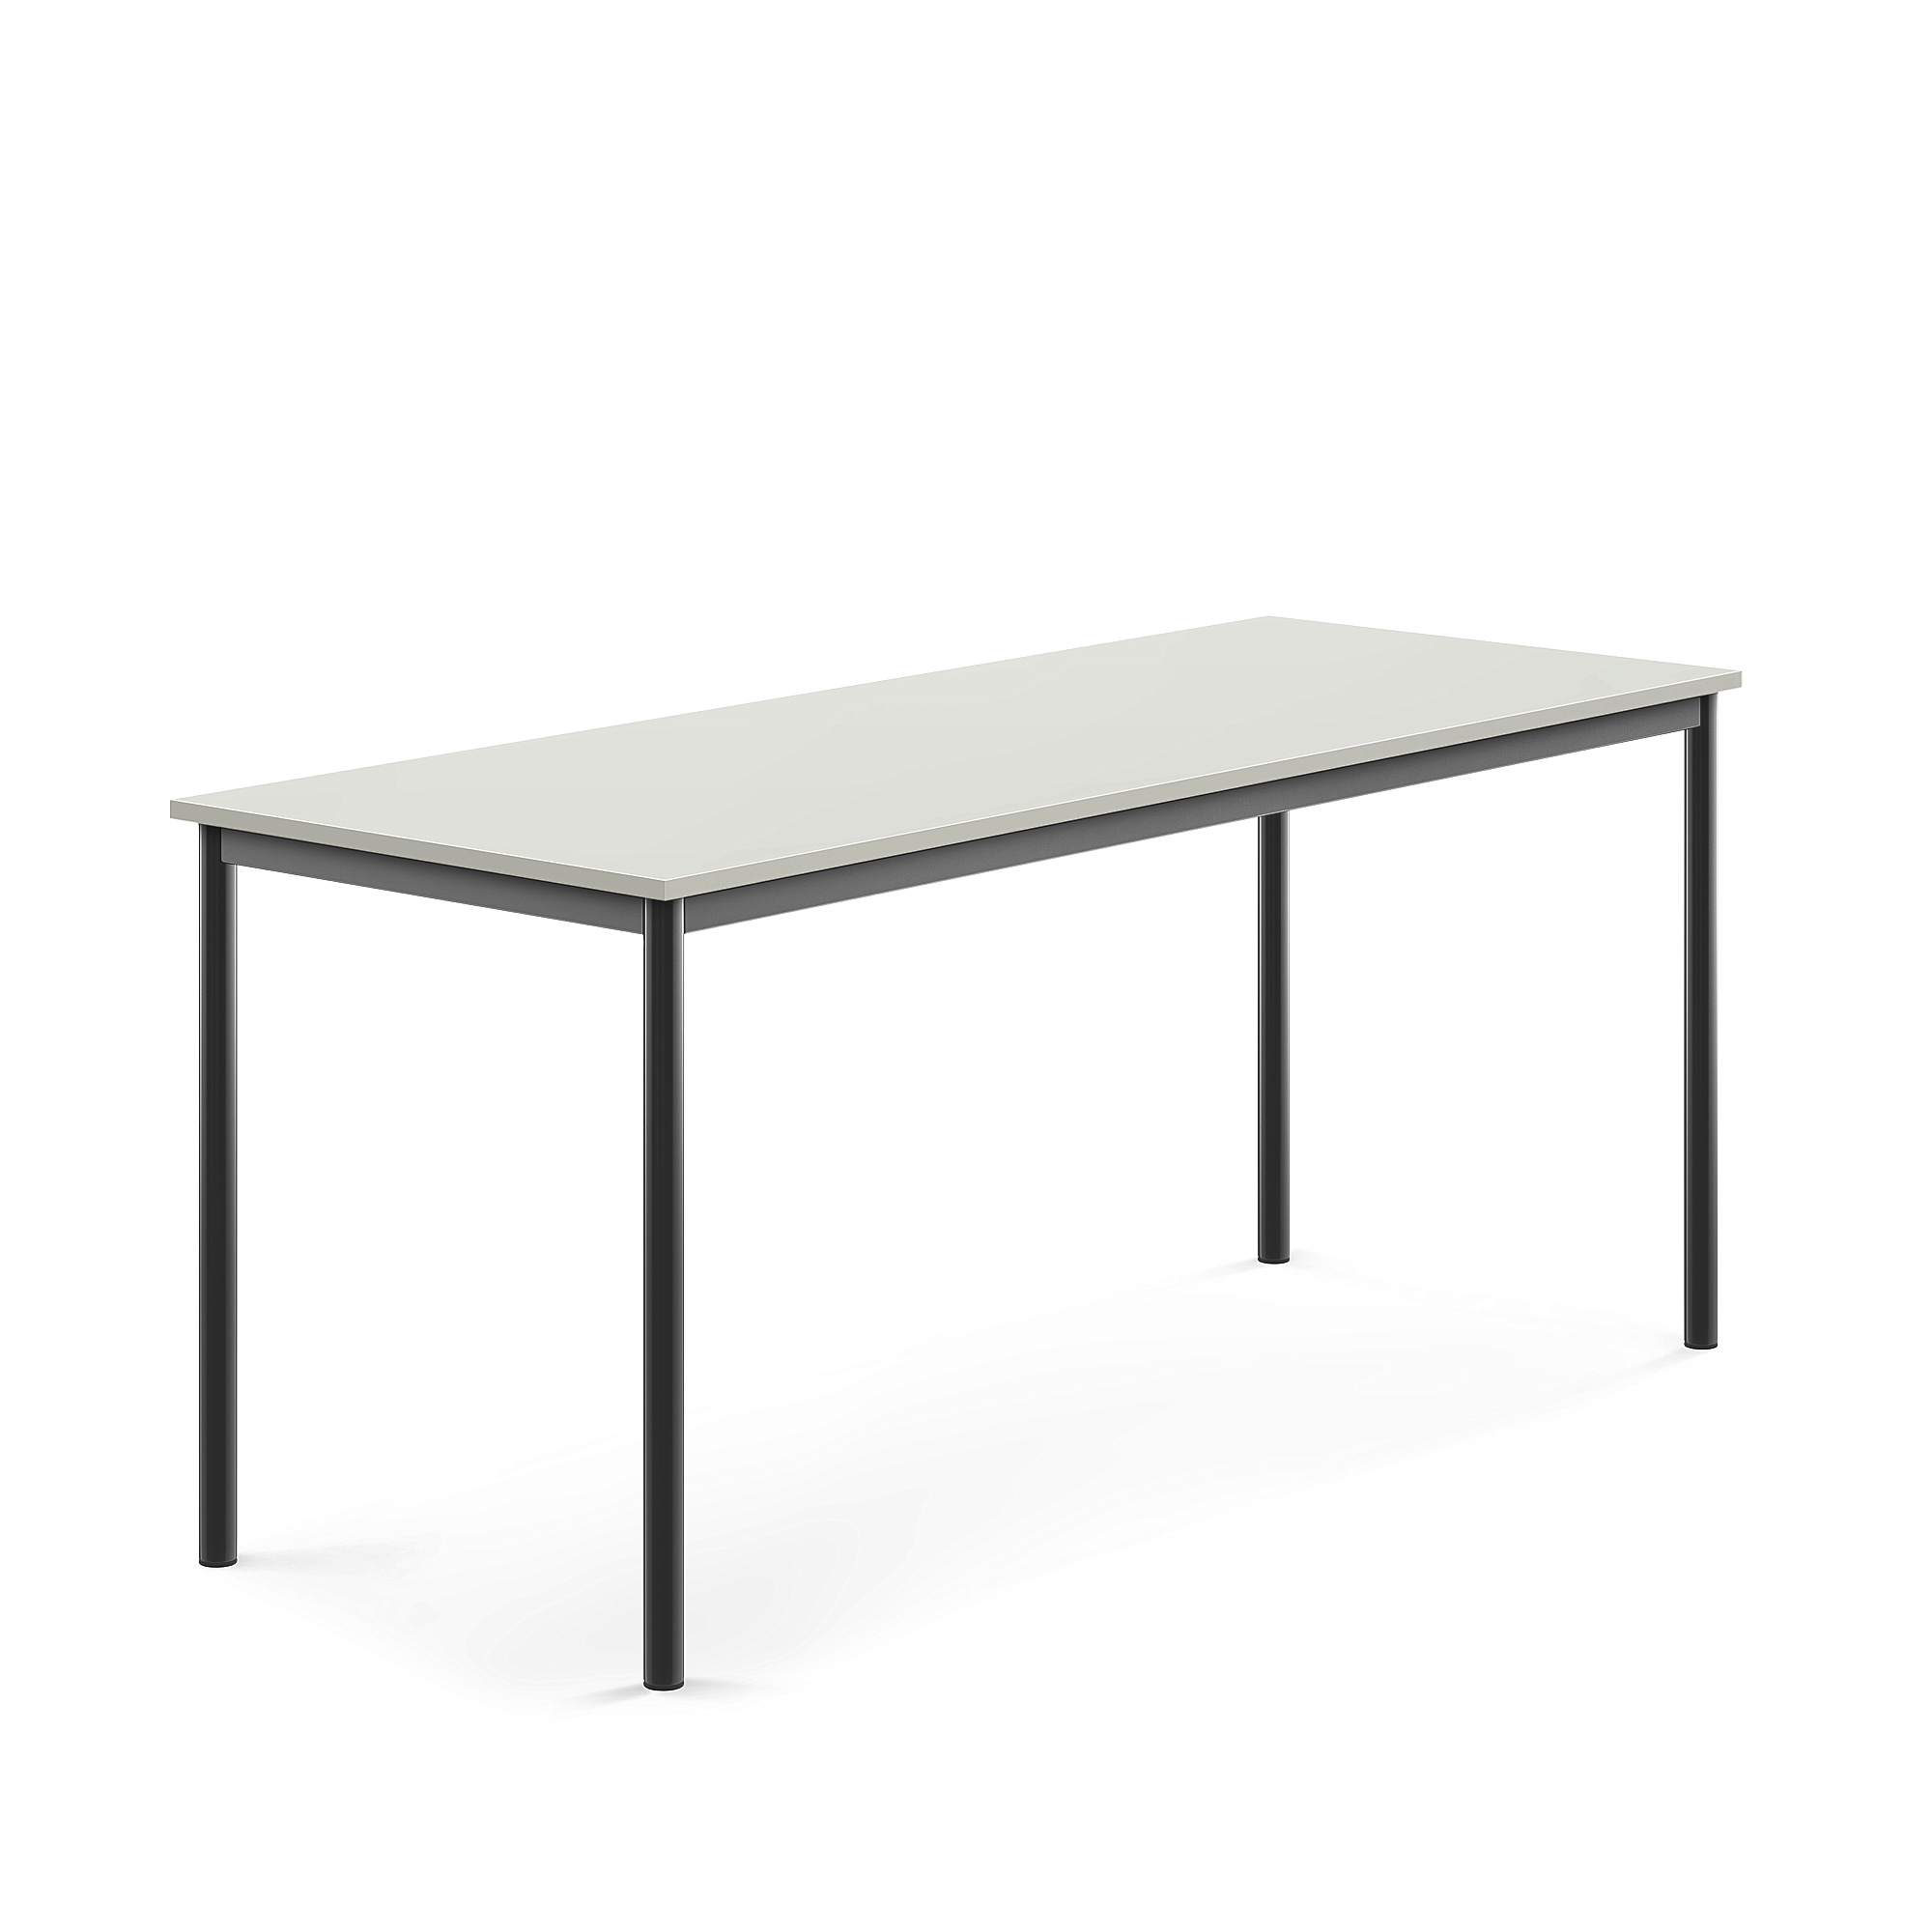 Stůl BORÅS, 1800x700x760 mm, antracitově šedé nohy, HPL deska, šedá